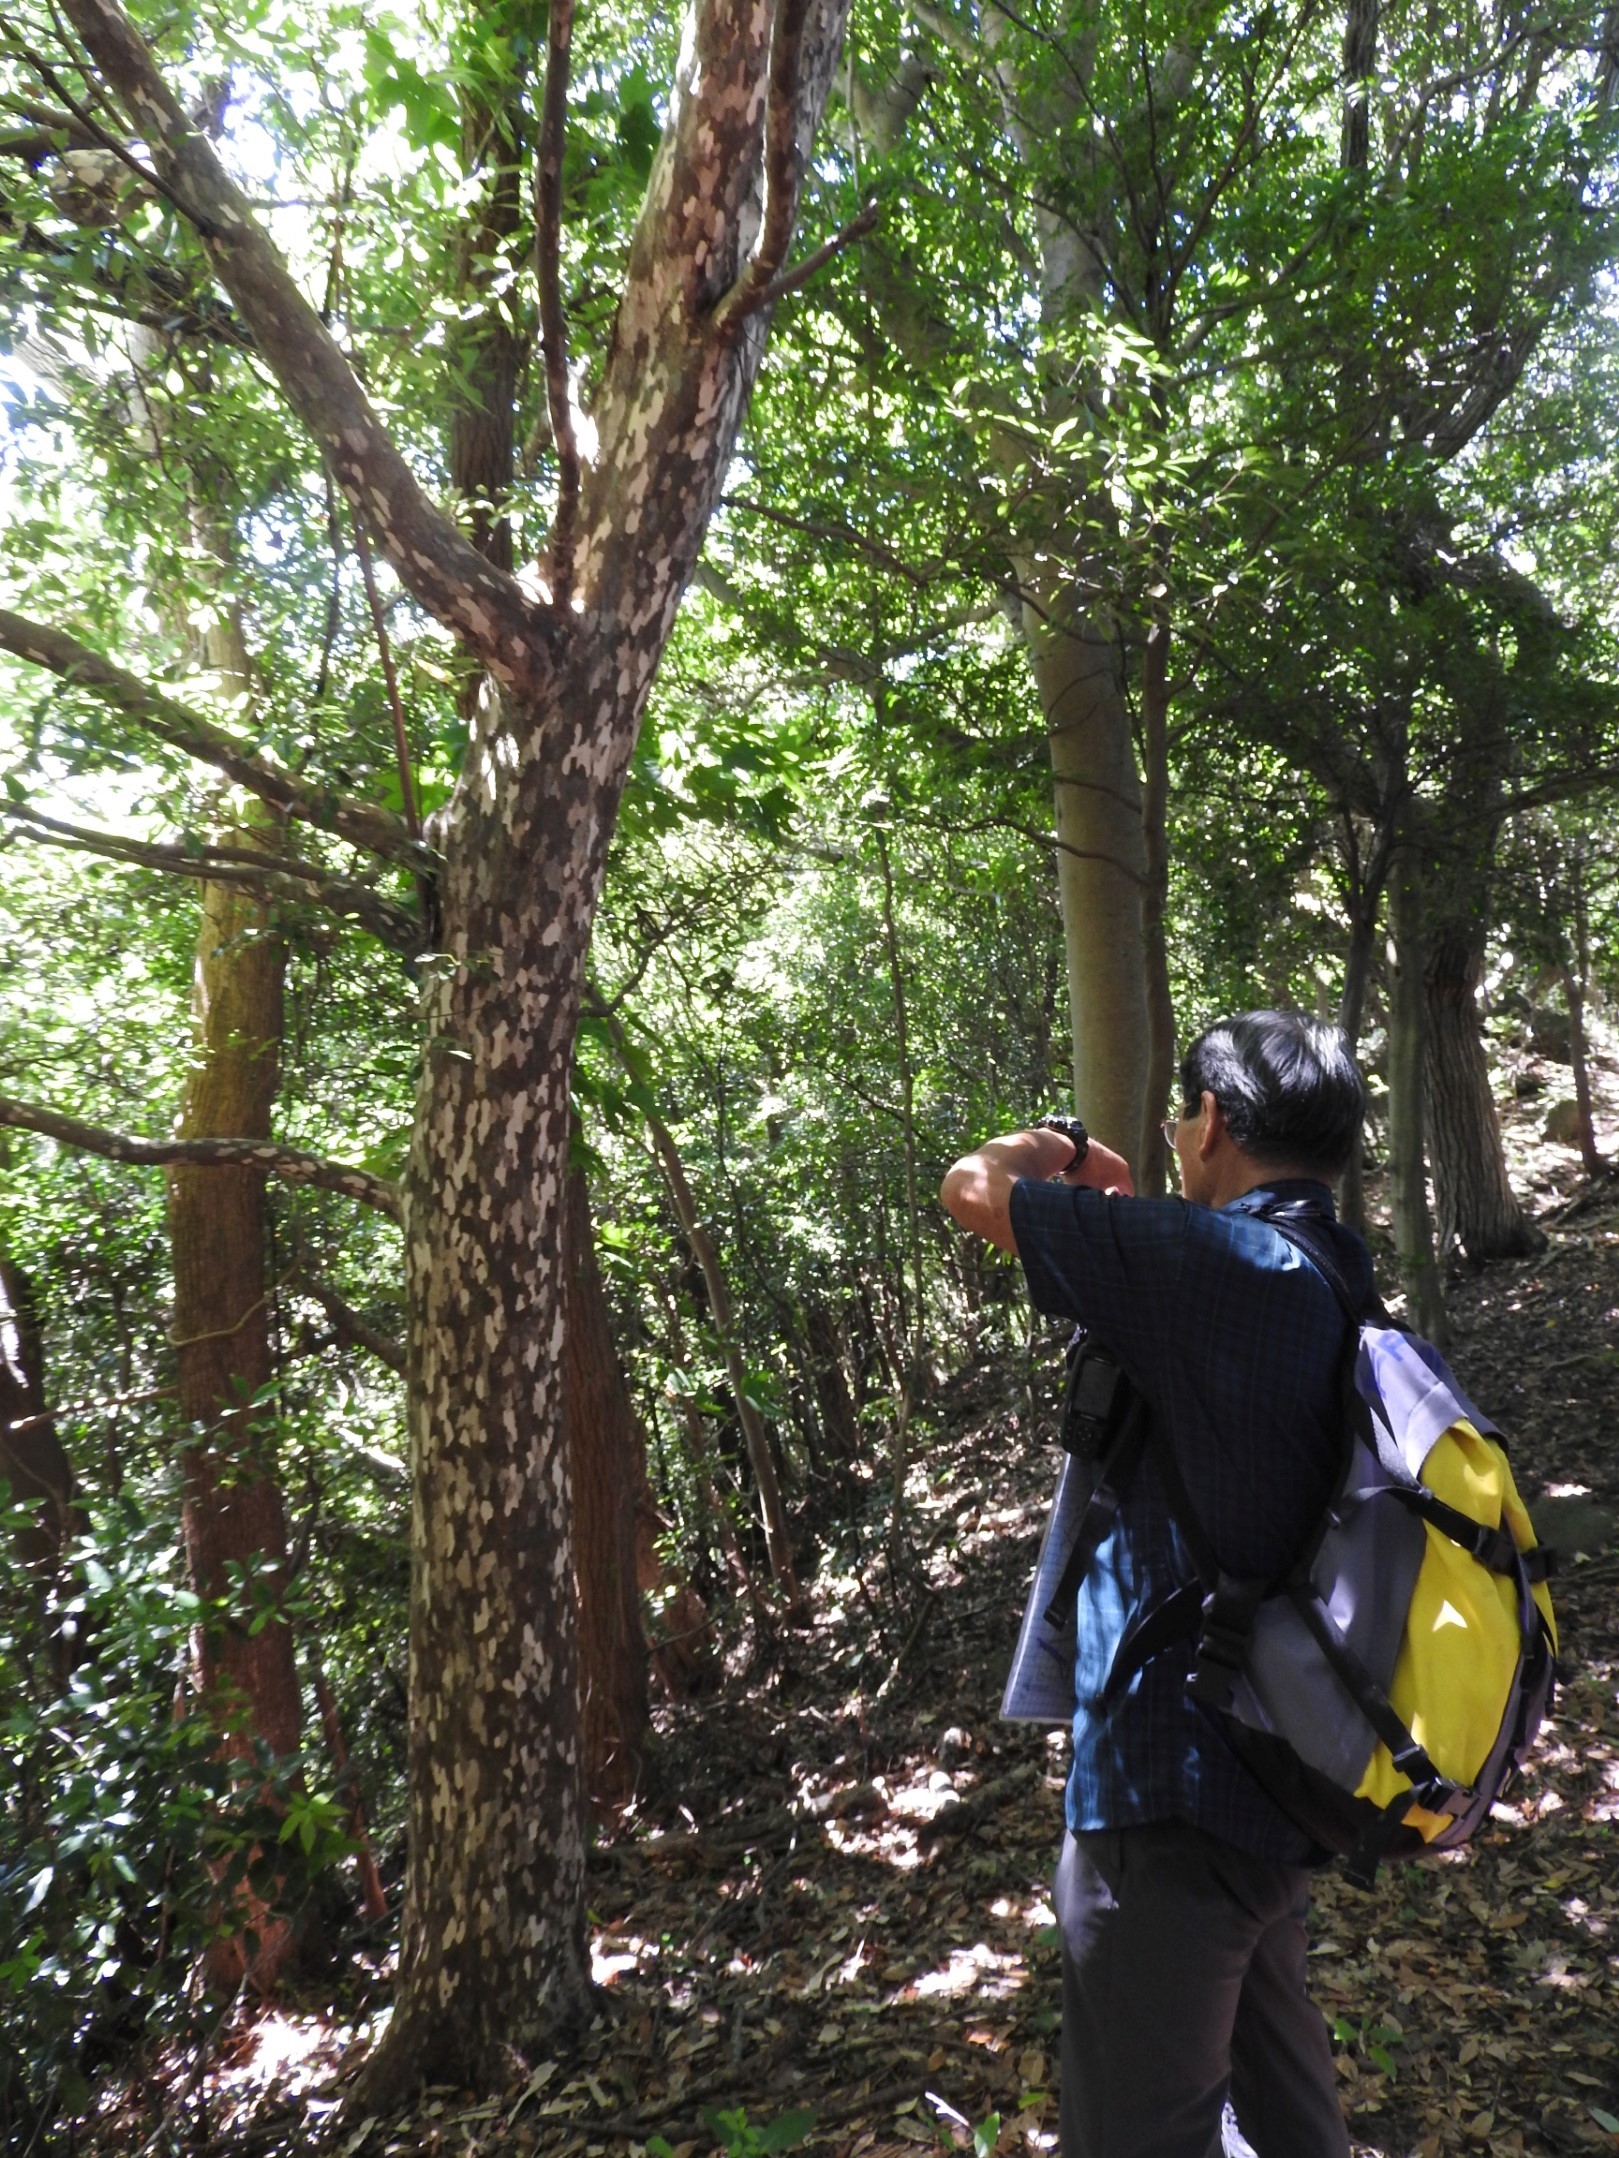 樹皮の鹿の子模様が特徴的なカゴノキ。この一帯に多く見られ、ヤマザクラなどの巨木も多い